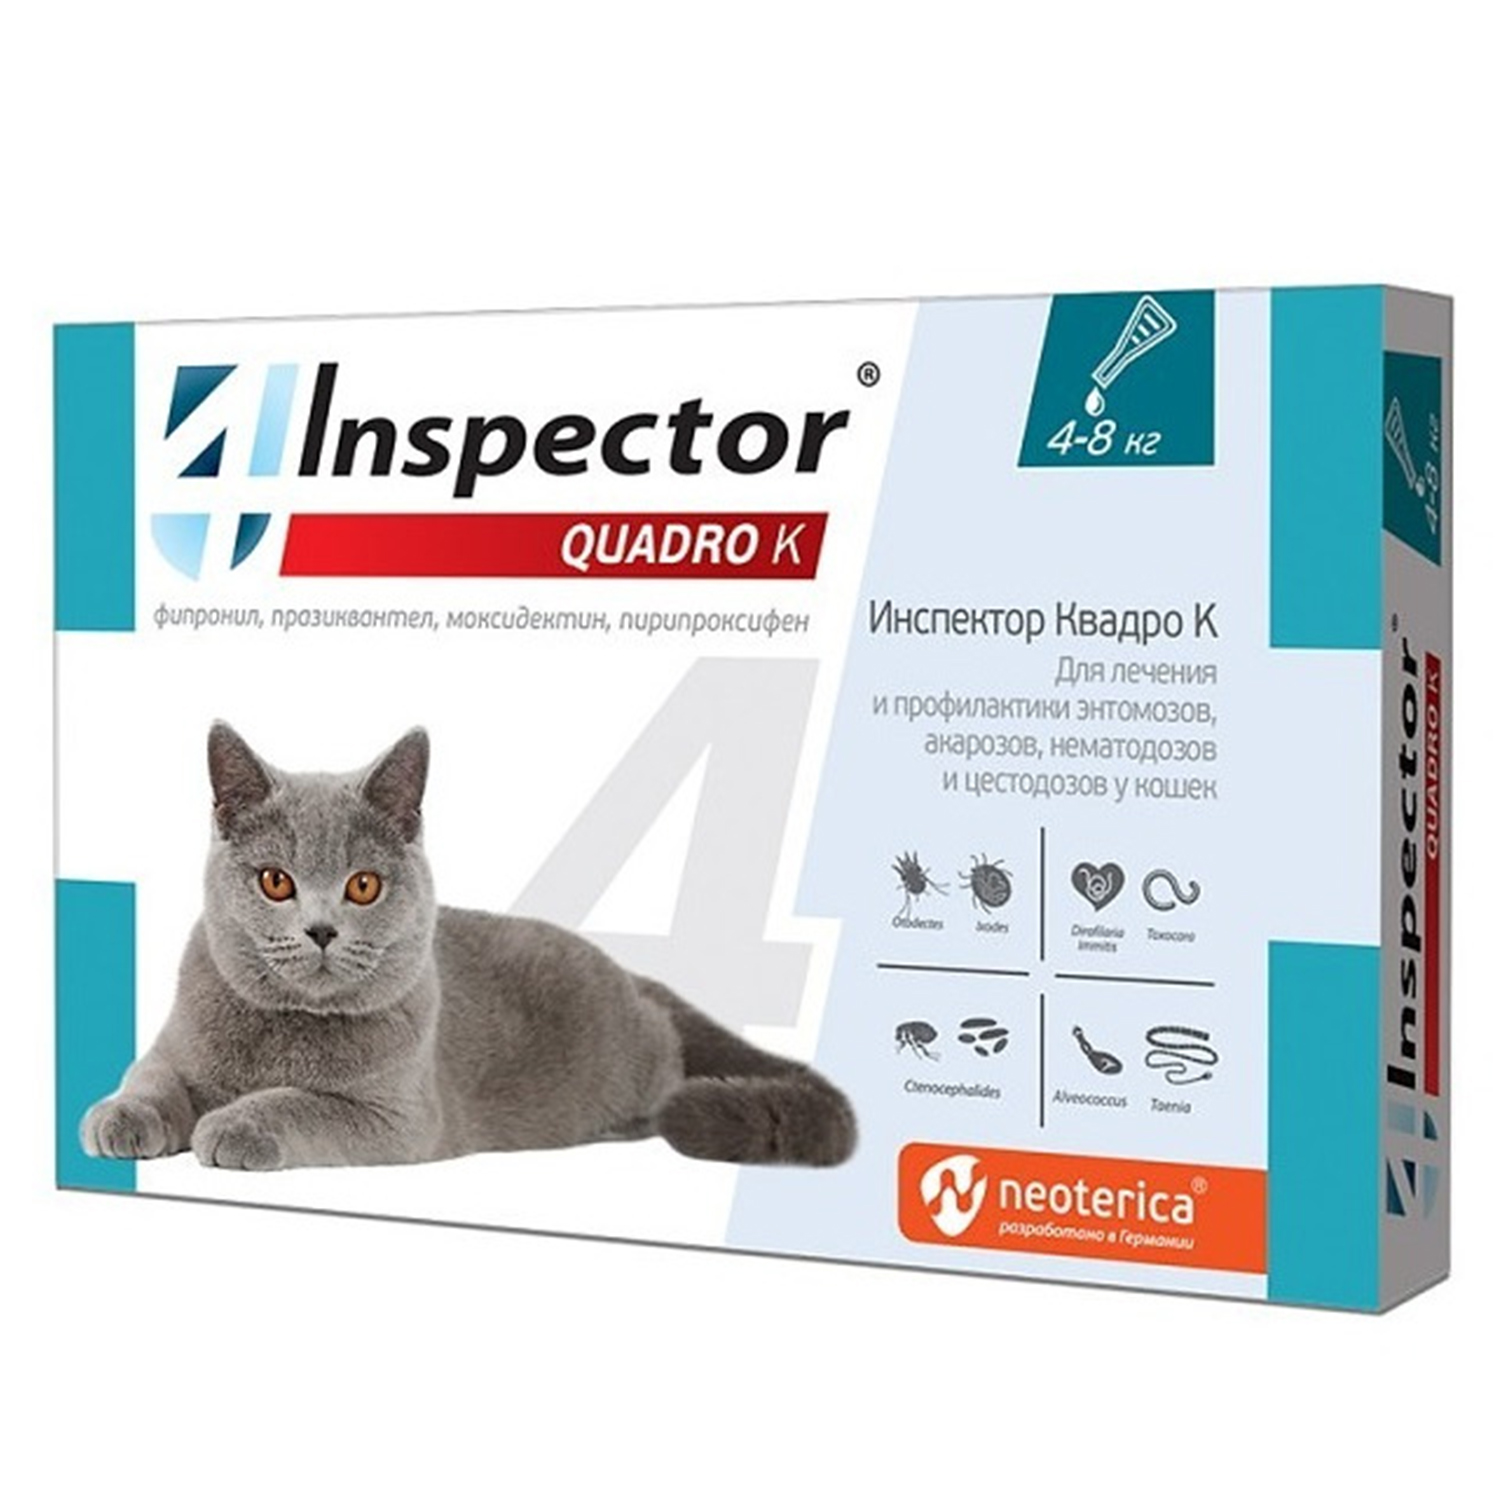 Капли от паразитов для кошек 4-8 кг Inspector 